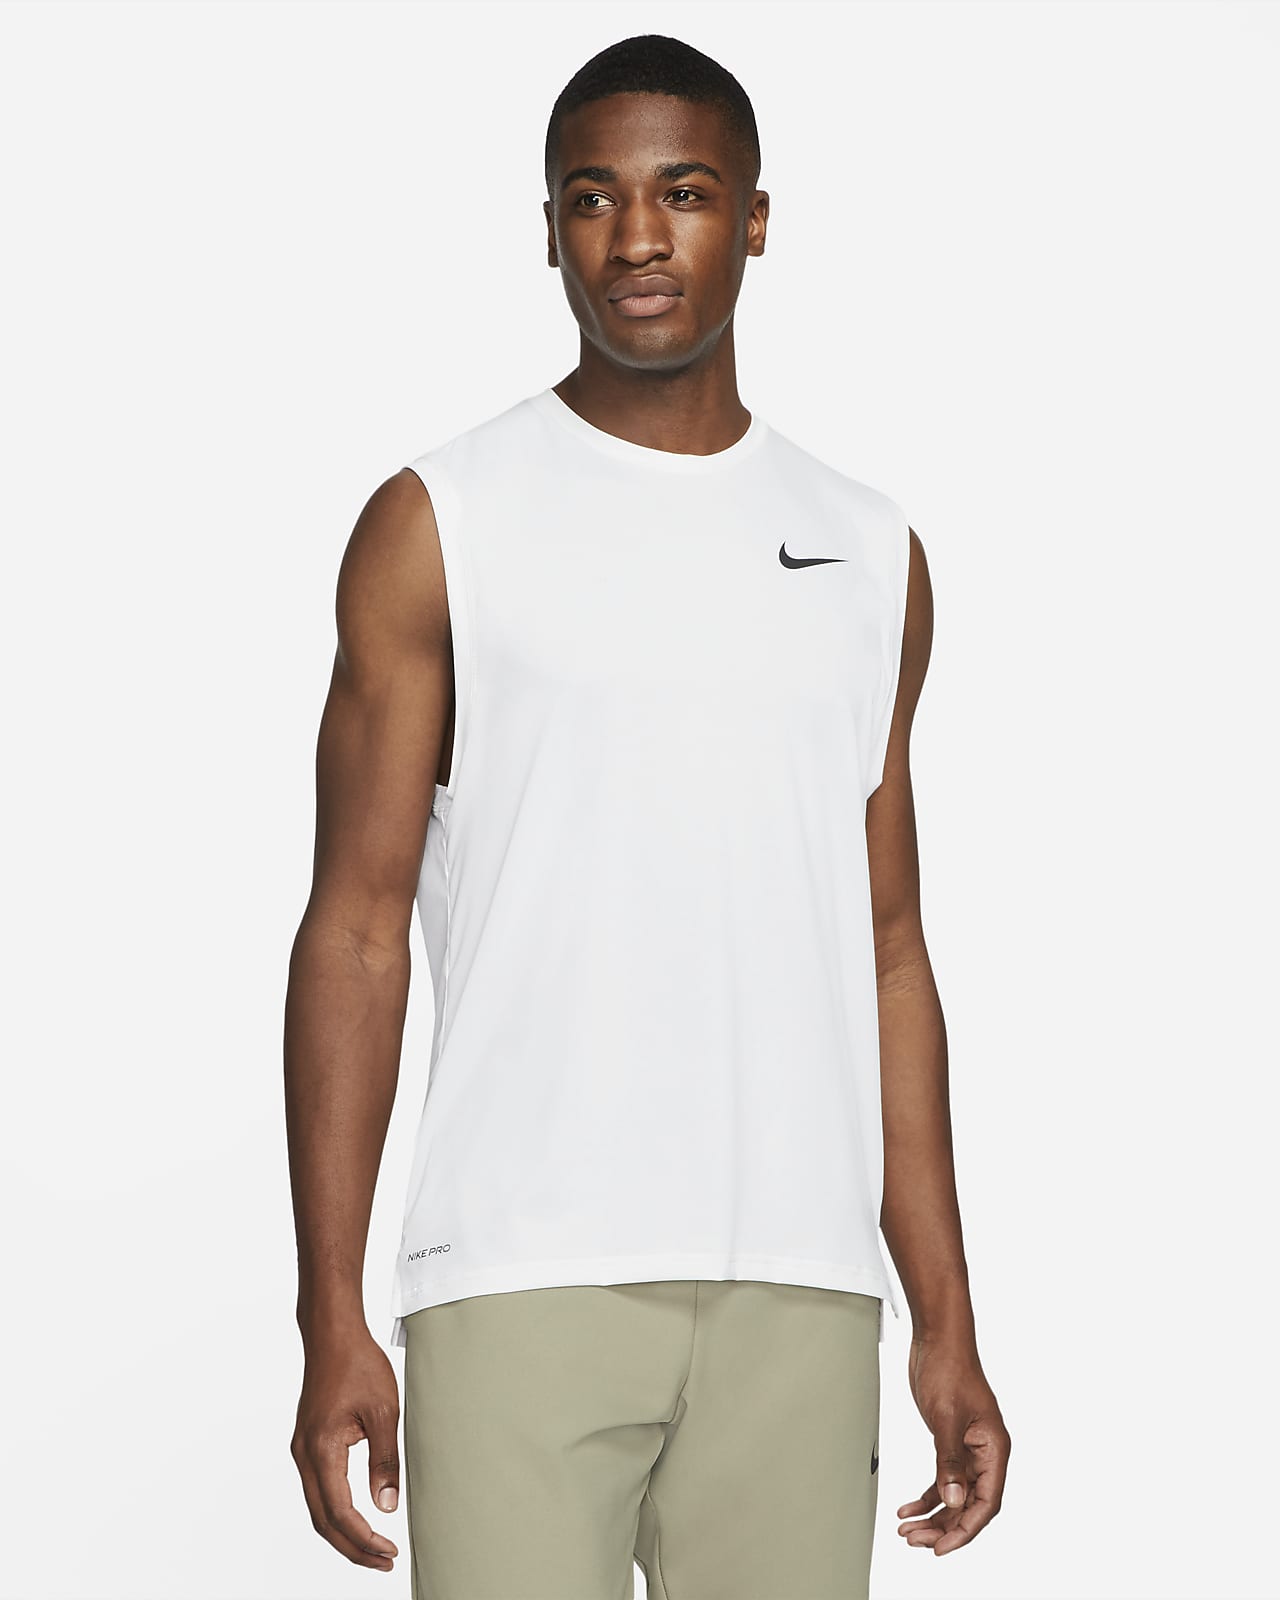 Hombre Blanco Camisetas sin mangas y de tirantes. Nike US